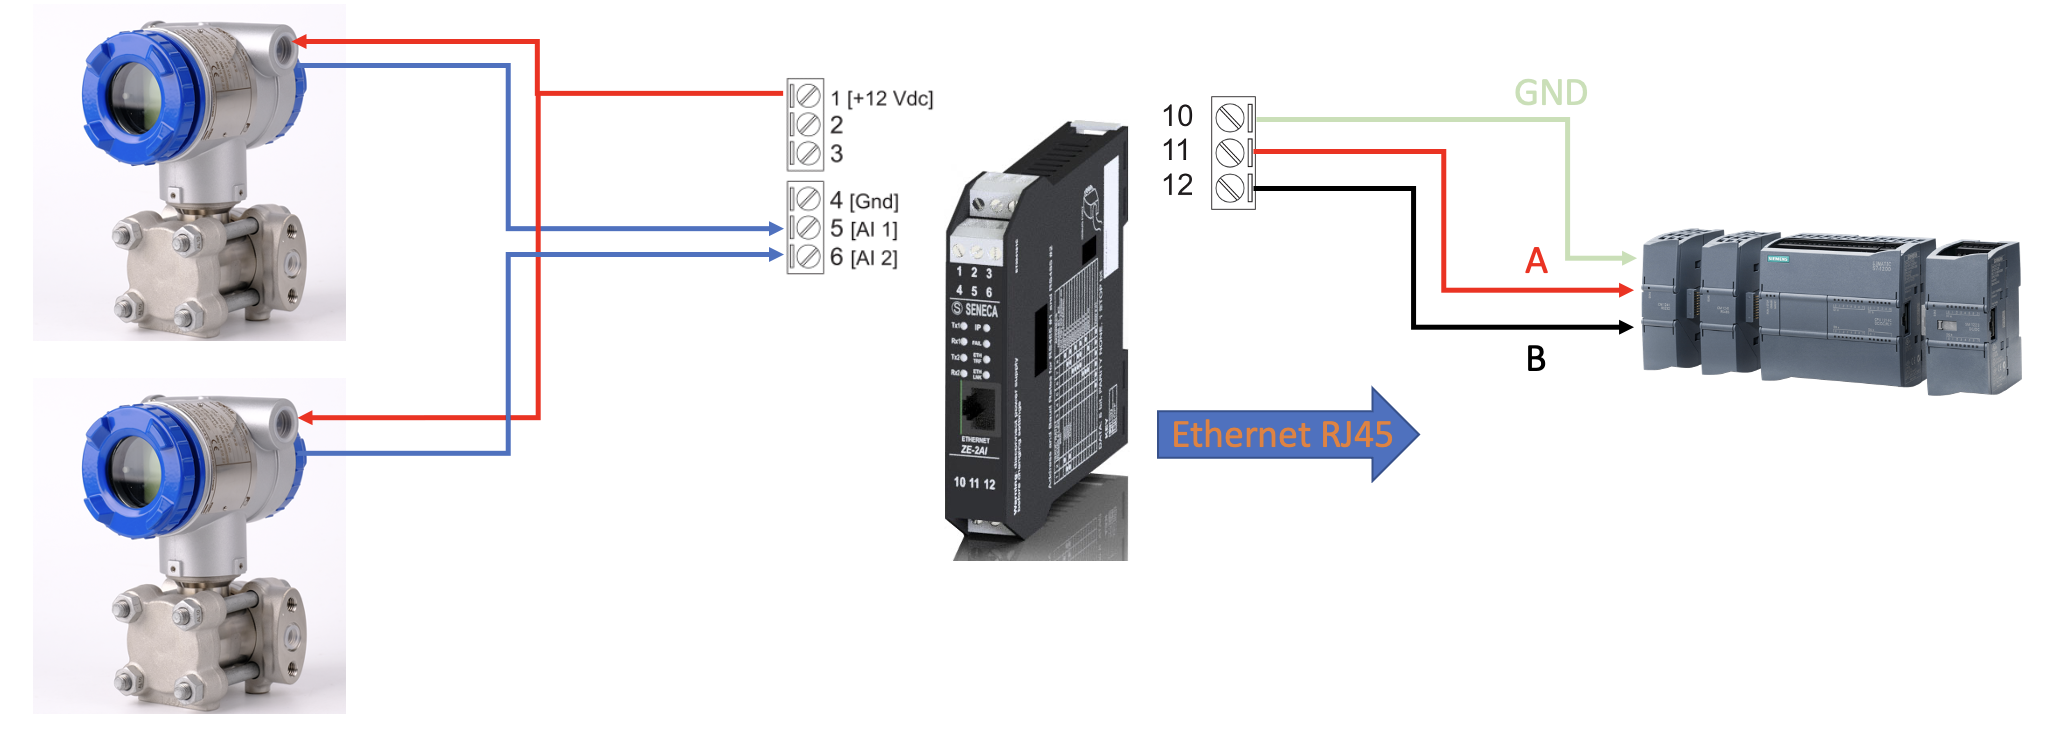 Cách sử dụng bộ chuyển đổi 4-20mA sang Modbus TCP-IP